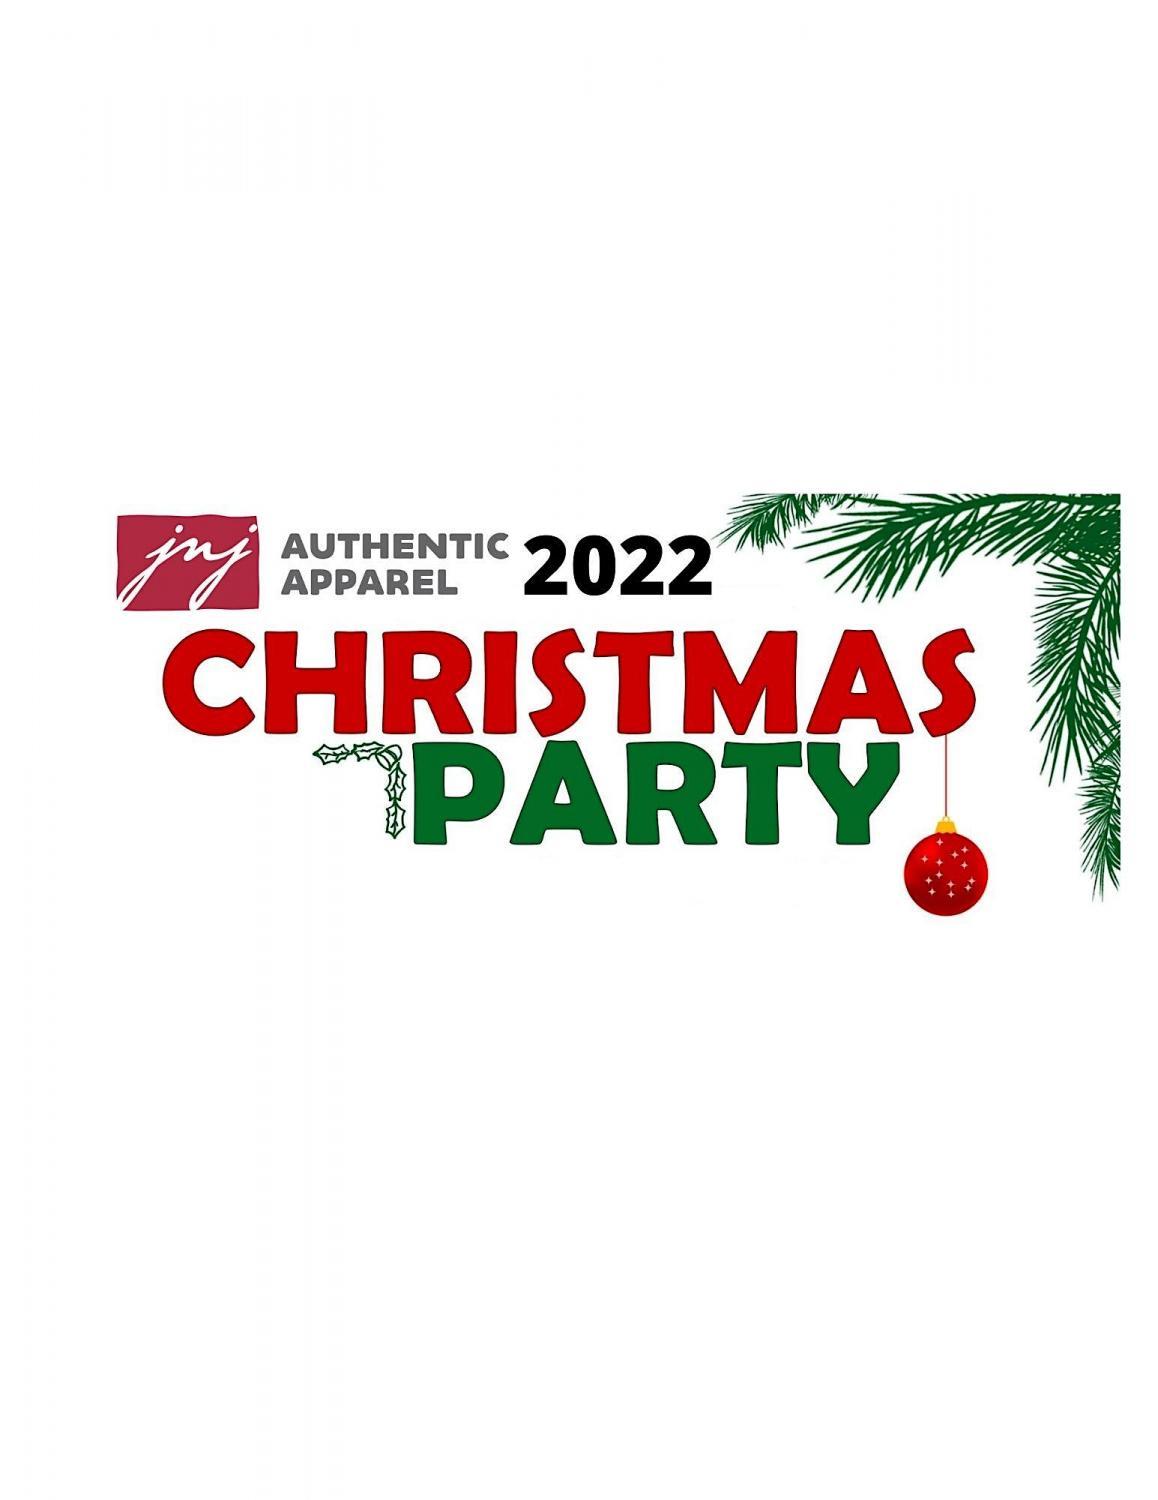 2022 JNJ Christmas Party
Sat Dec 17, 6:00 PM - Sat Dec 17, 8:30 PM
in 61 days